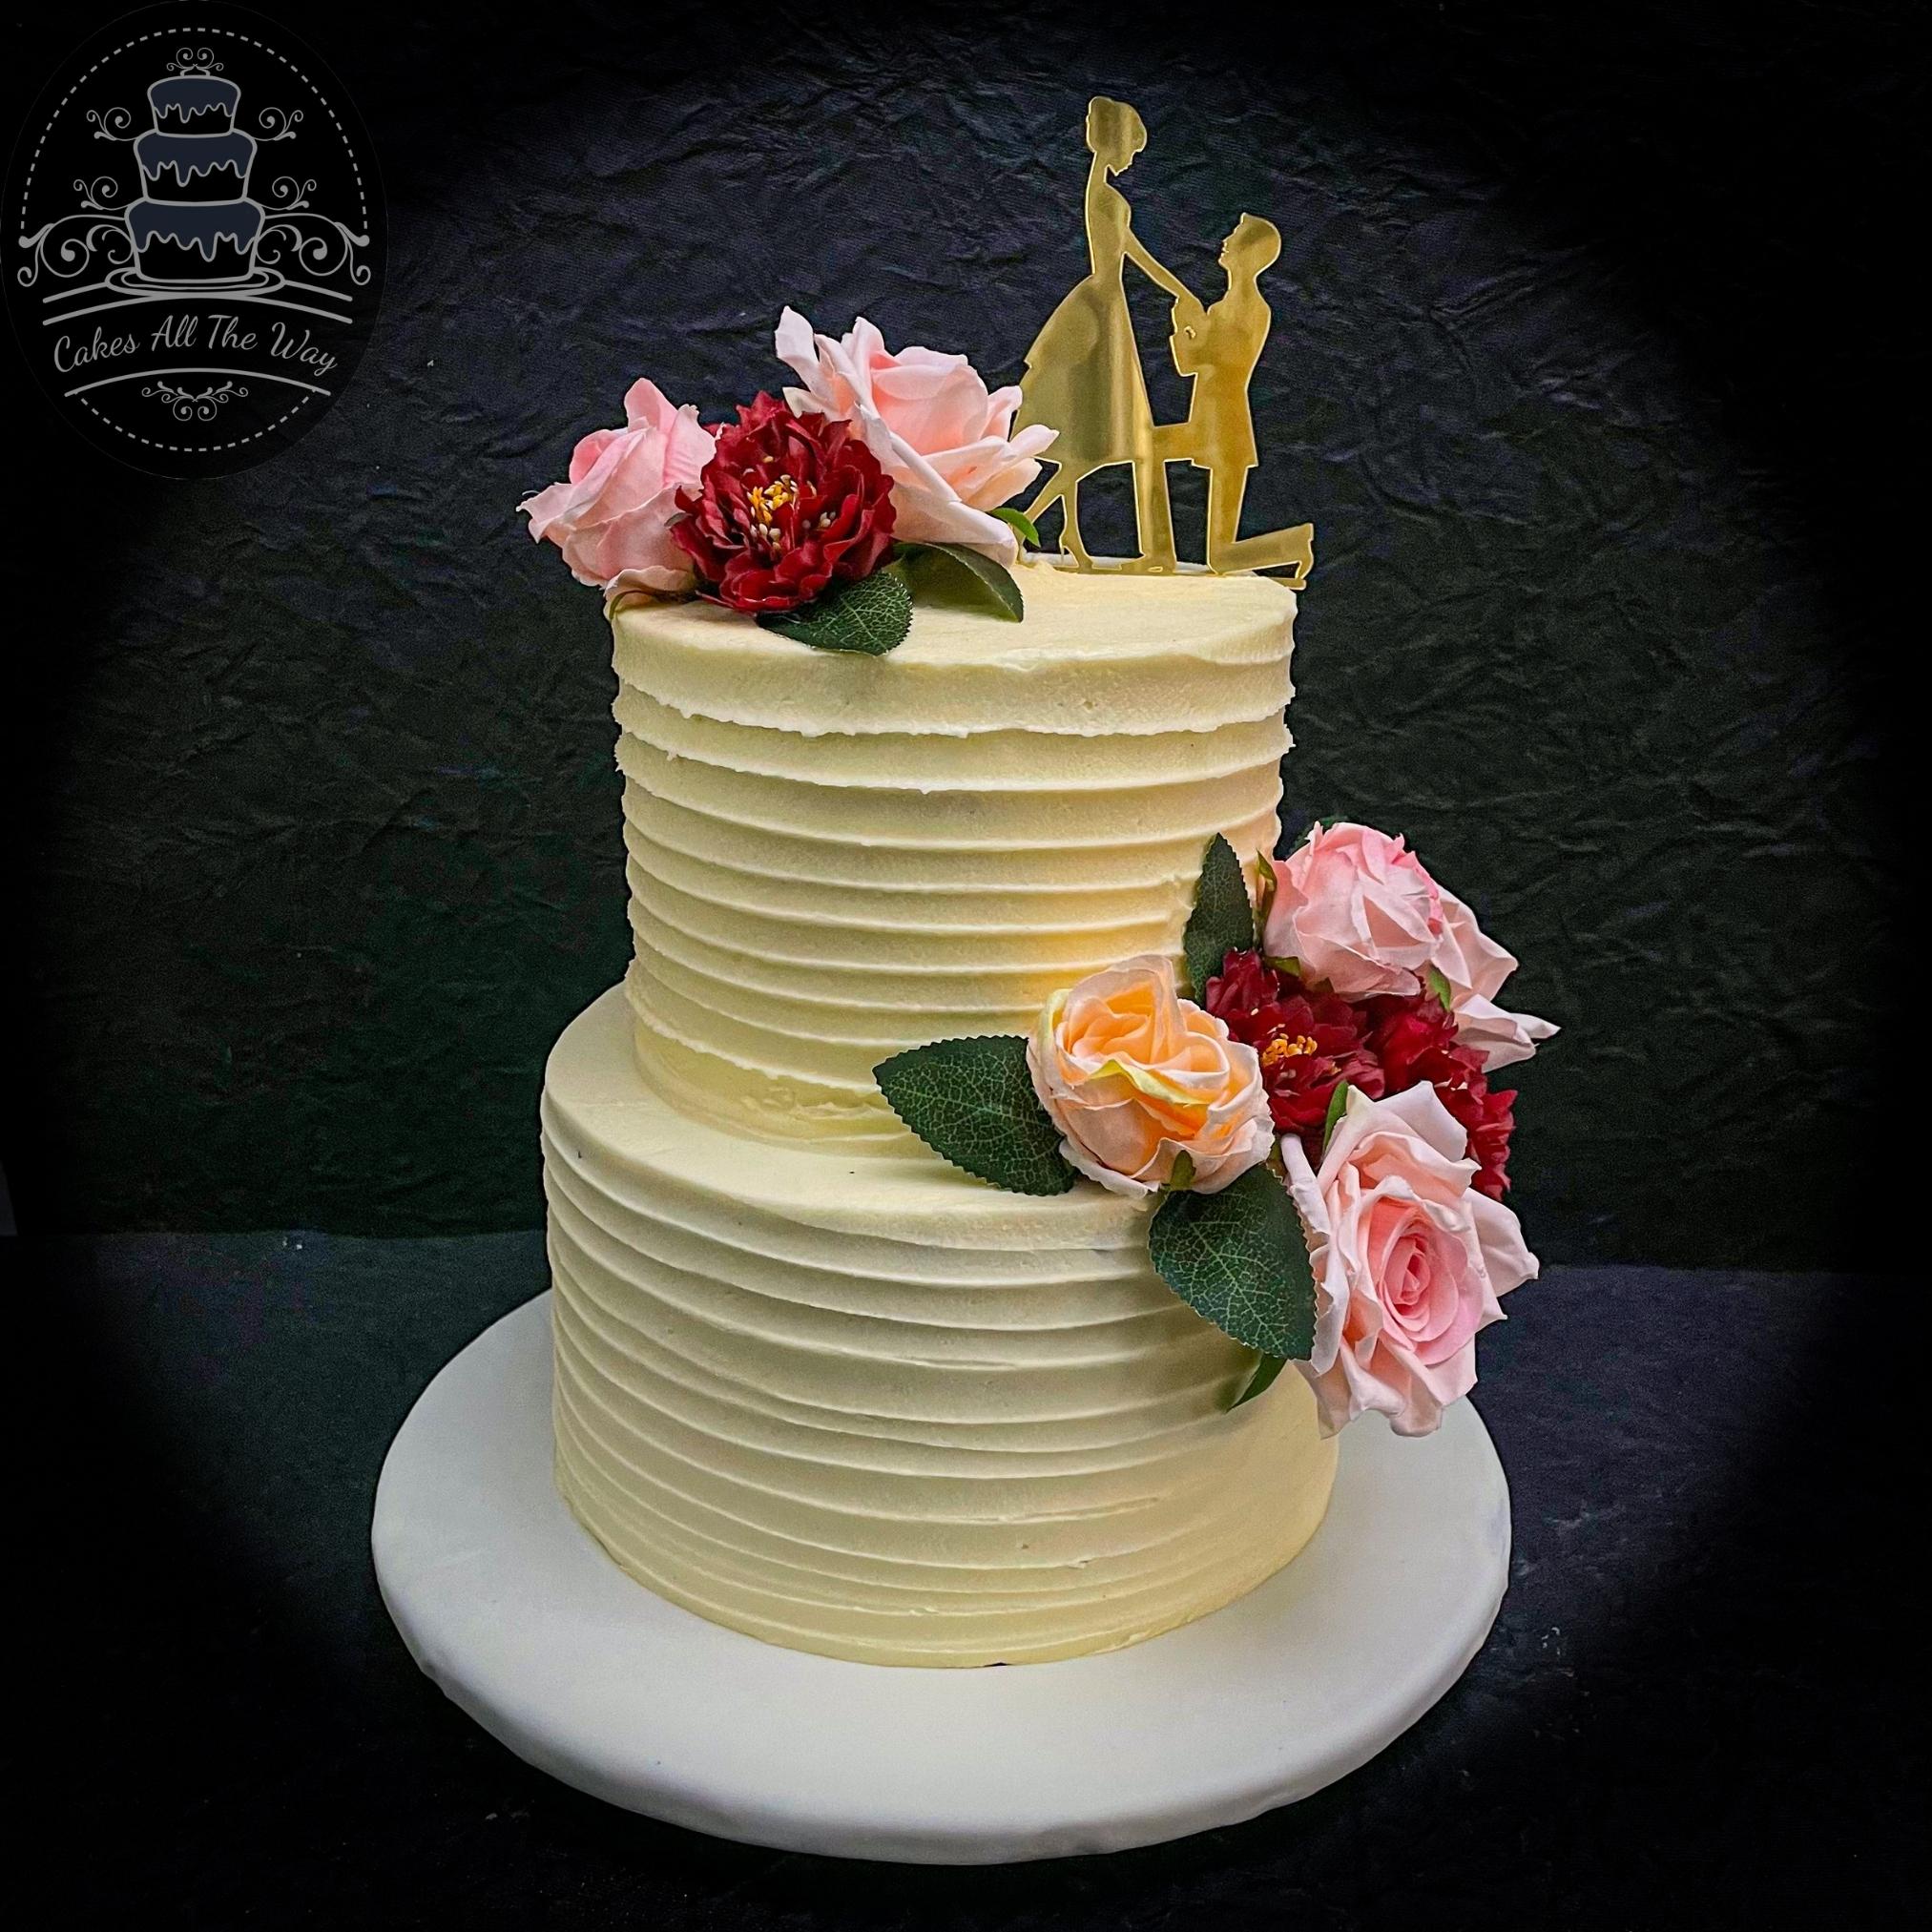 55 Lovely And Joyful Yellow Wedding Cakes - Weddingomania